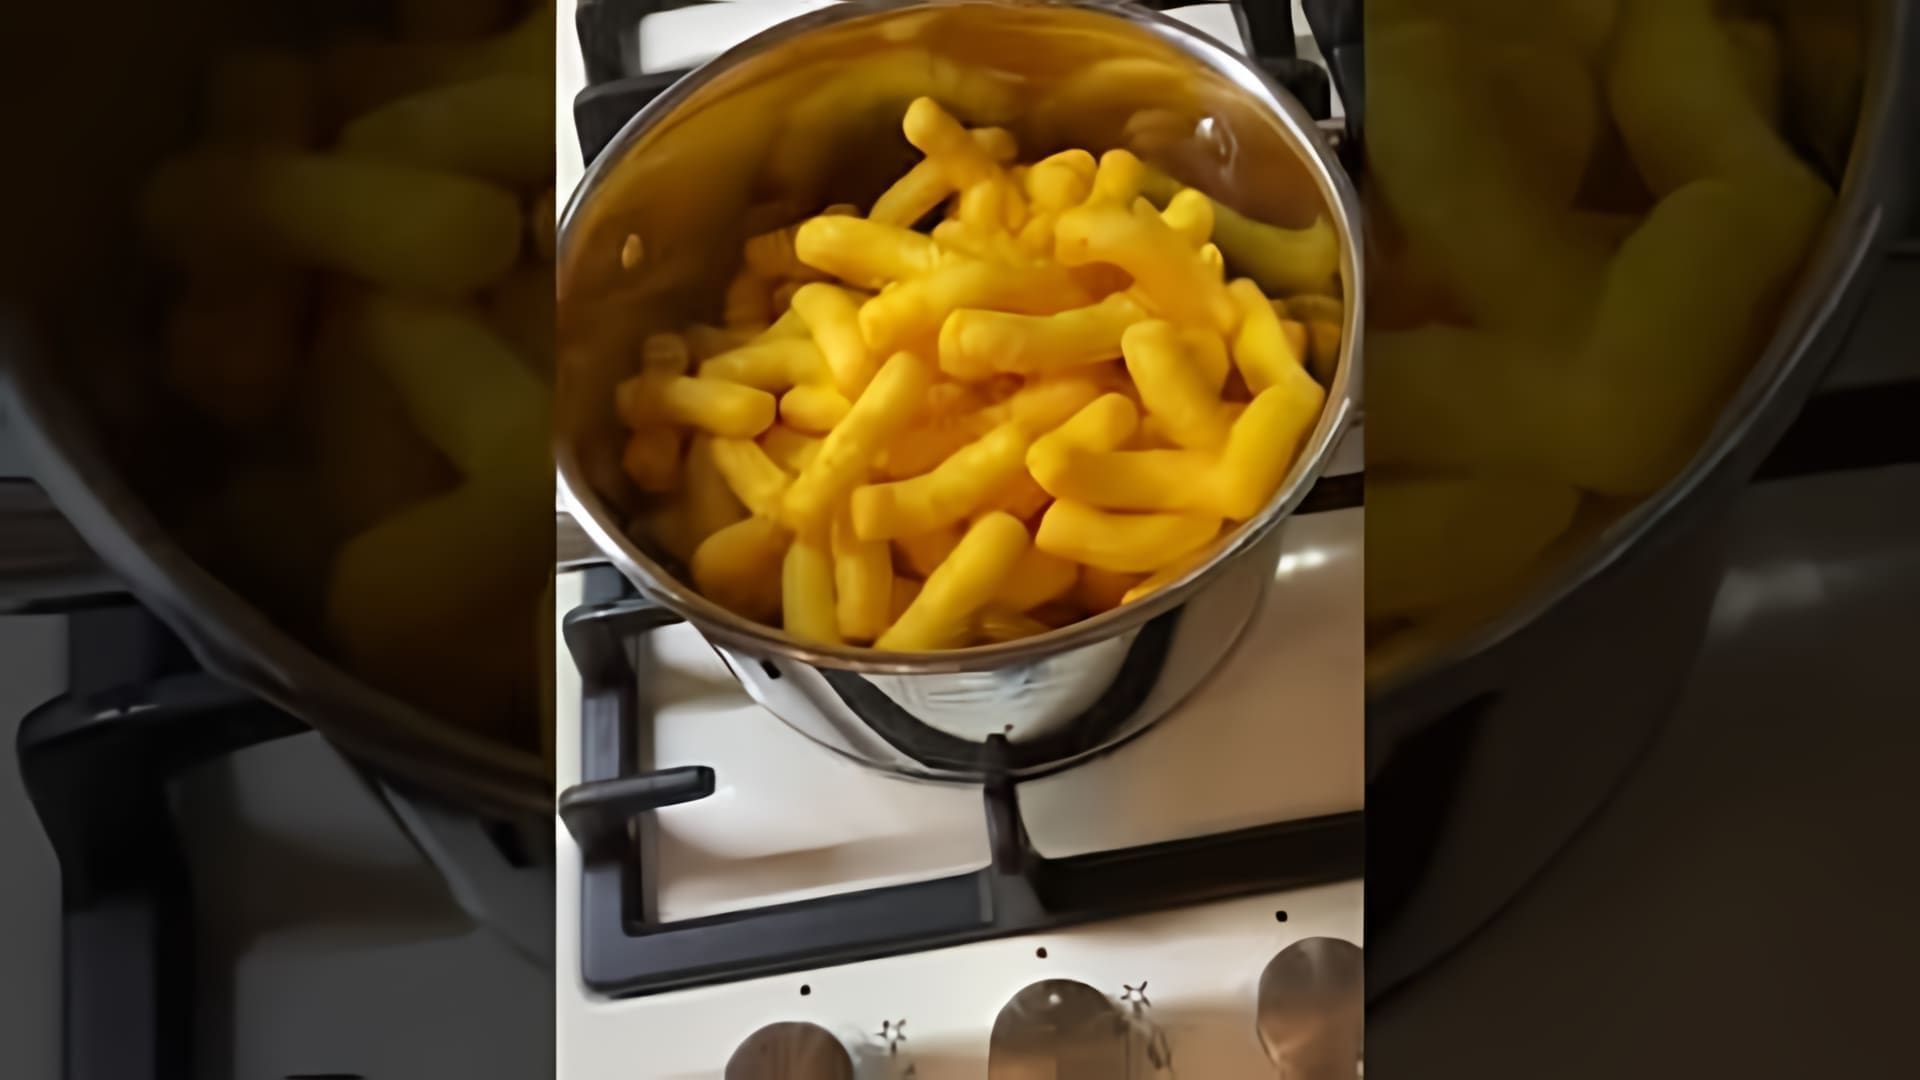 В этом видео-ролике будет представлен рецепт приготовления макарон с Читос, который стал популярным в ТикТоке